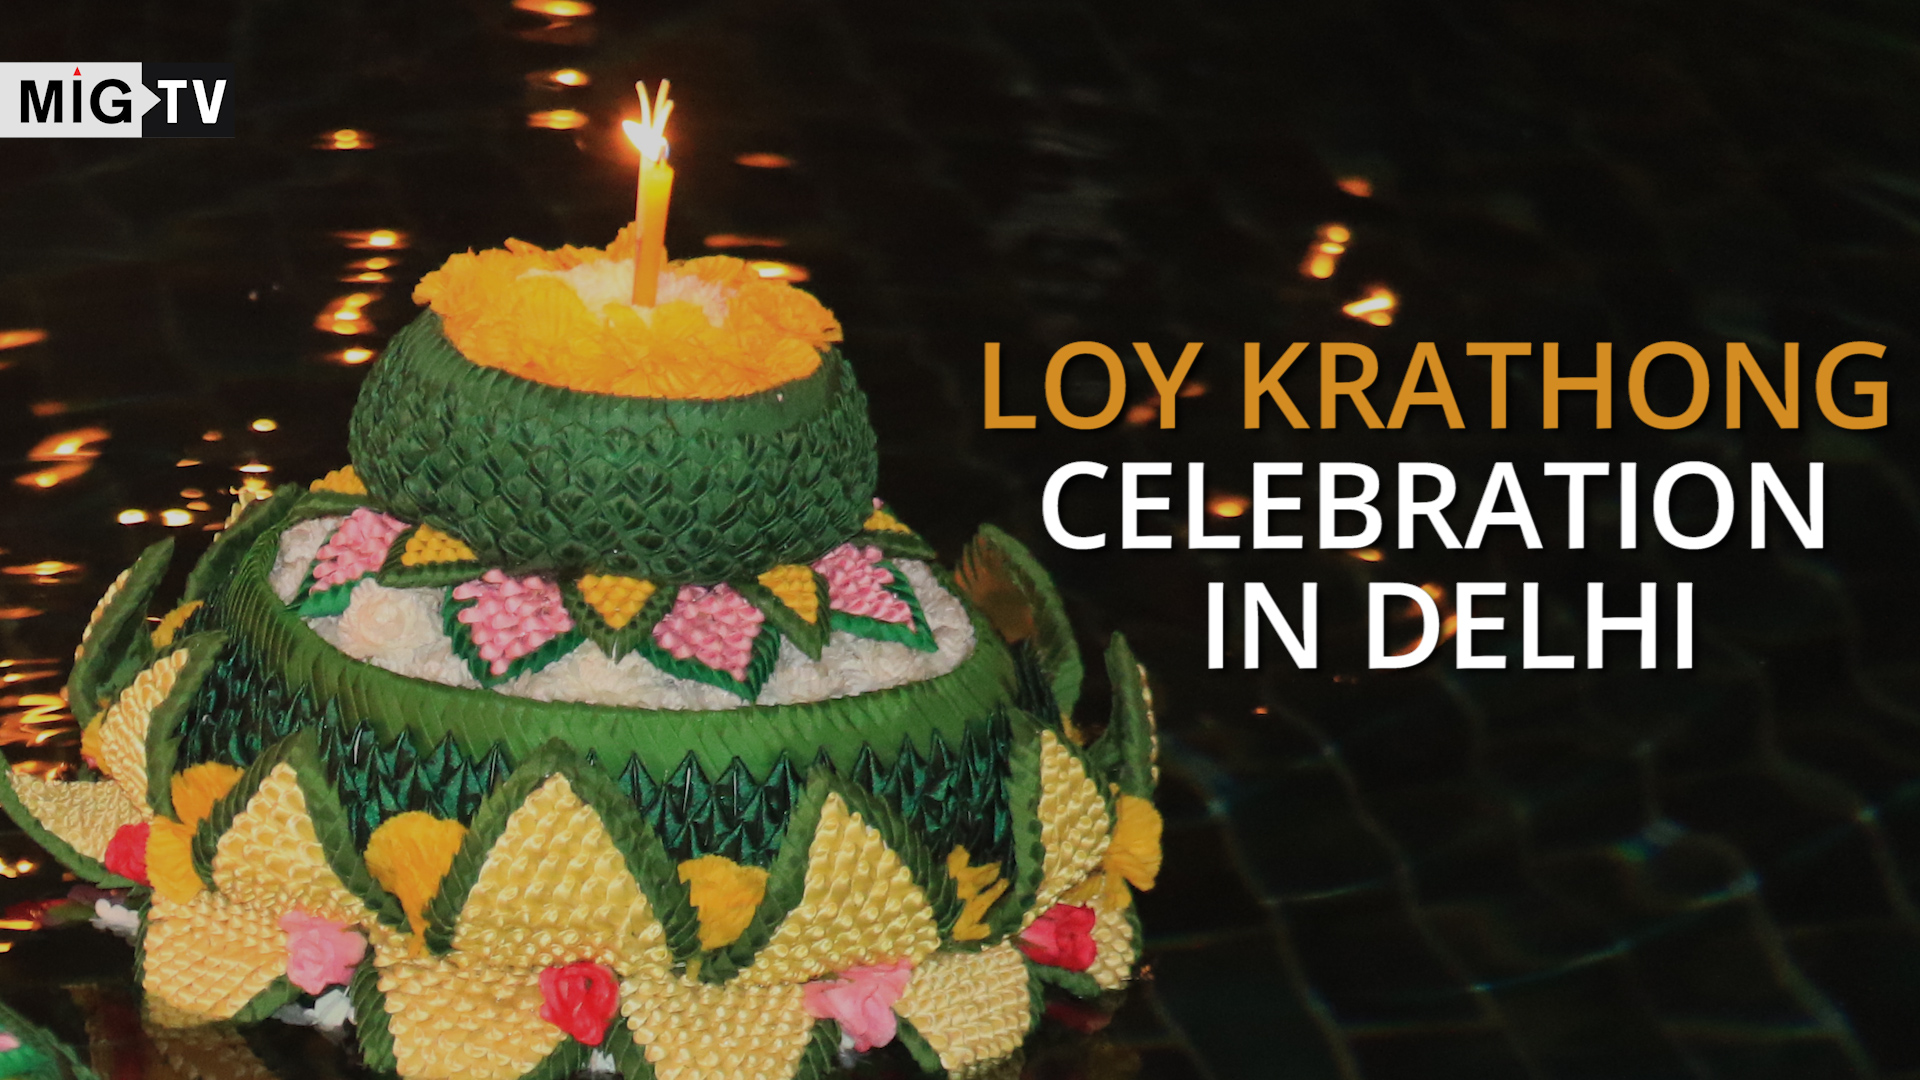 Loy Krathong celebration in Delhi | Thailand